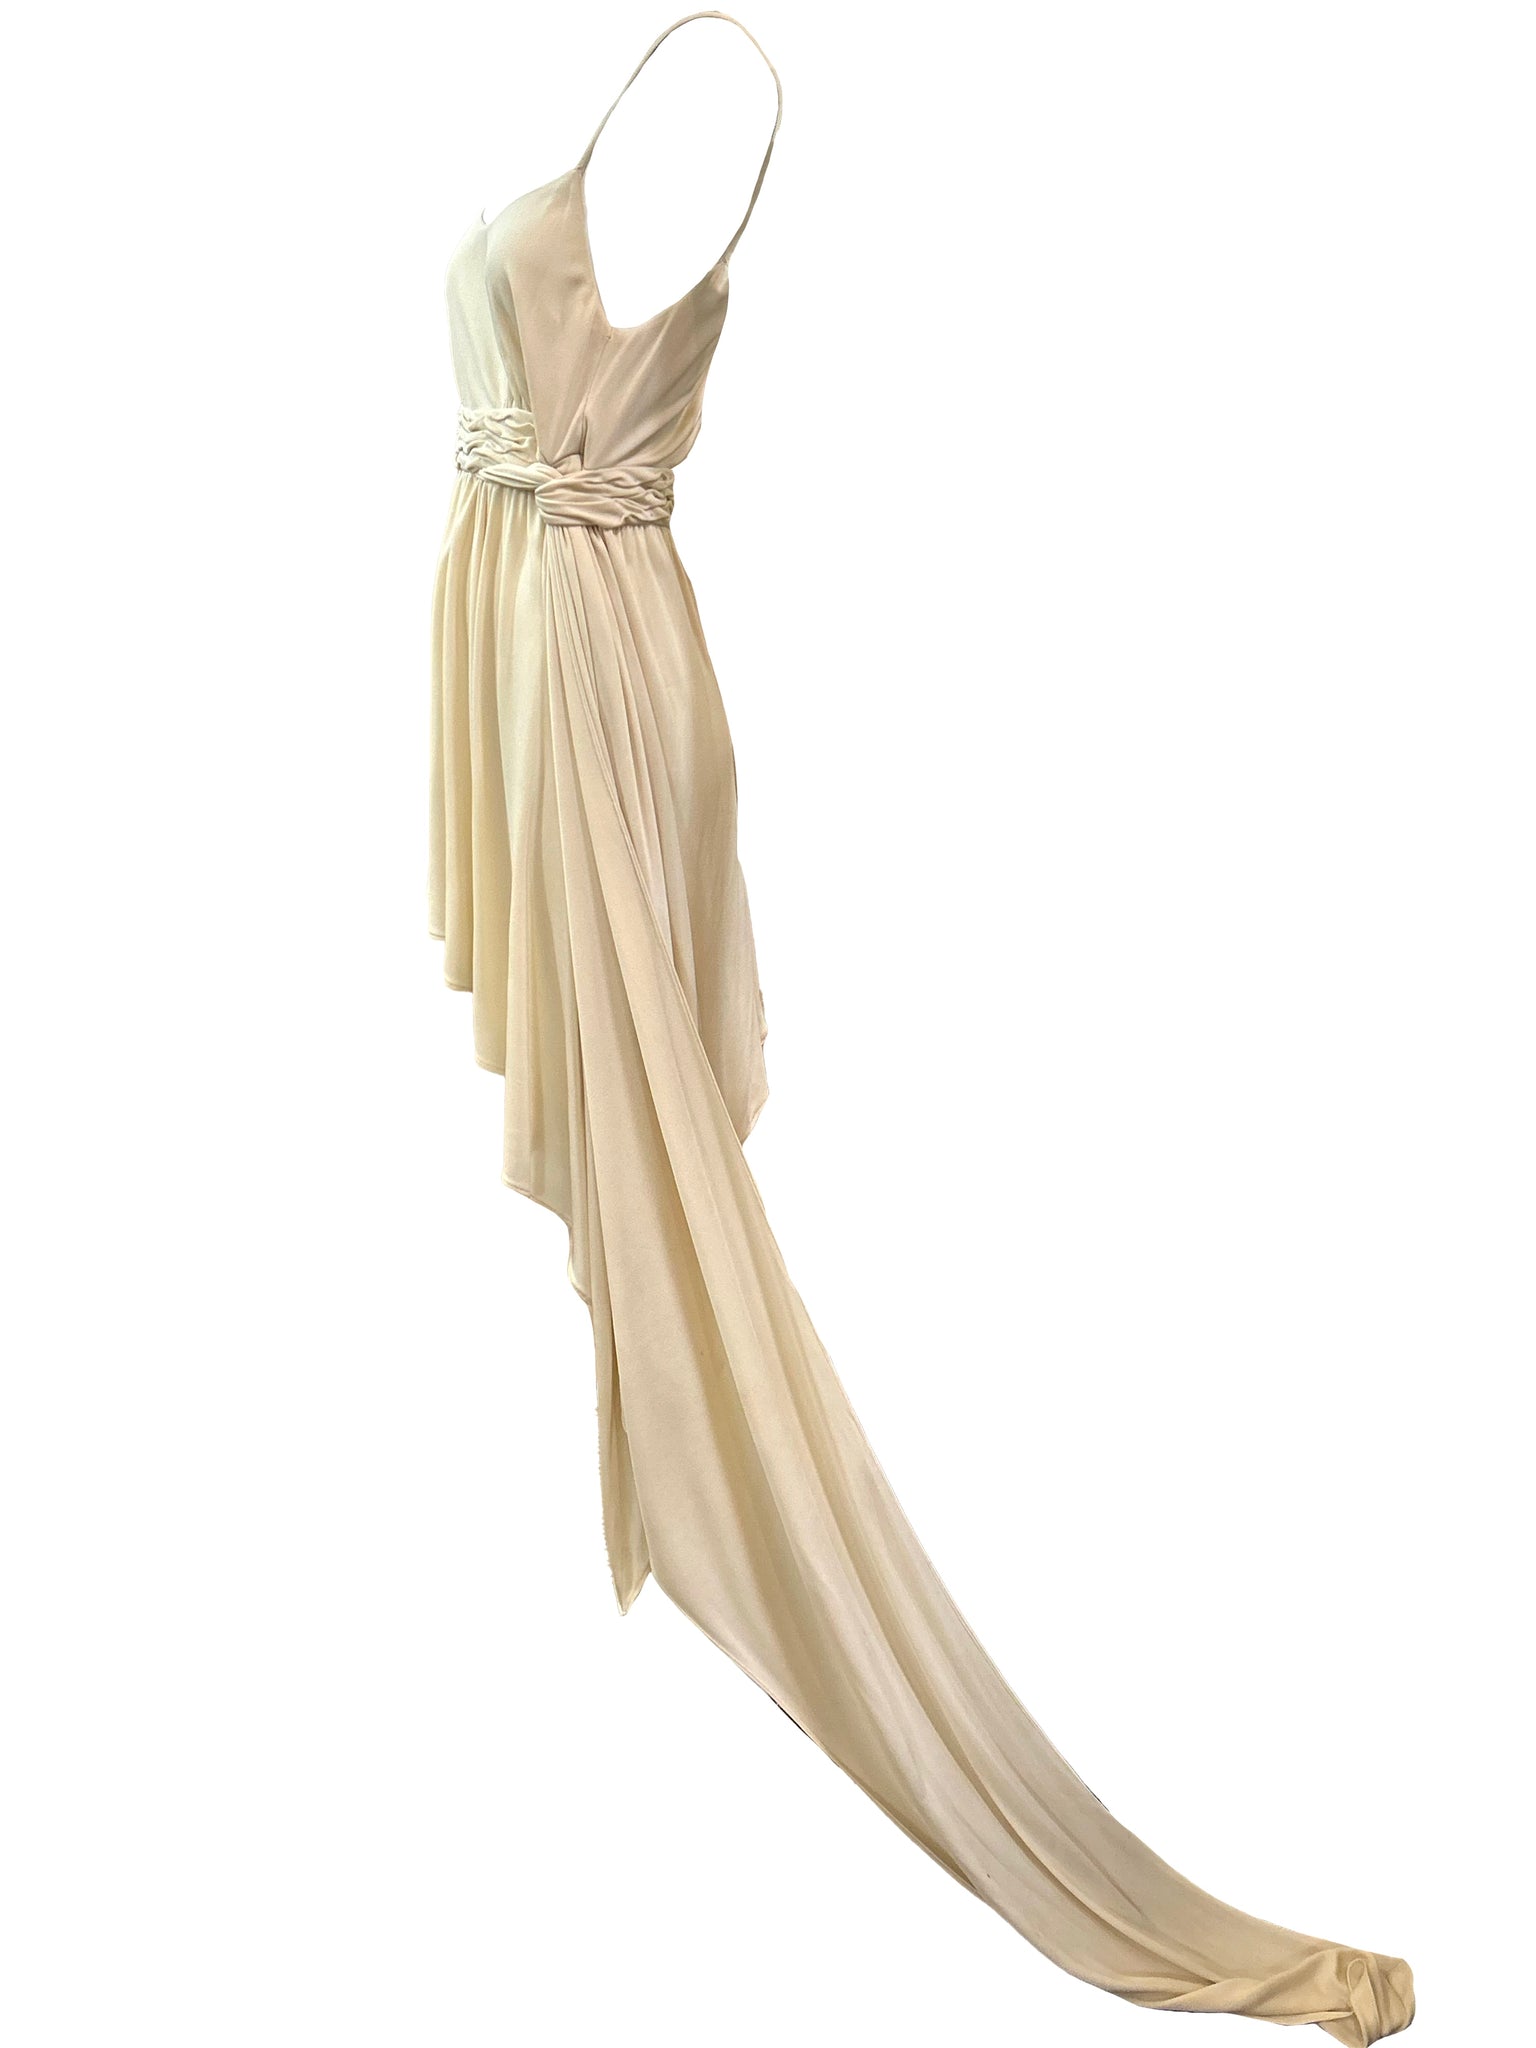 Karl Lagerfeld 90s White Jersey Goddess Mini Dress SIDE 3 of 6